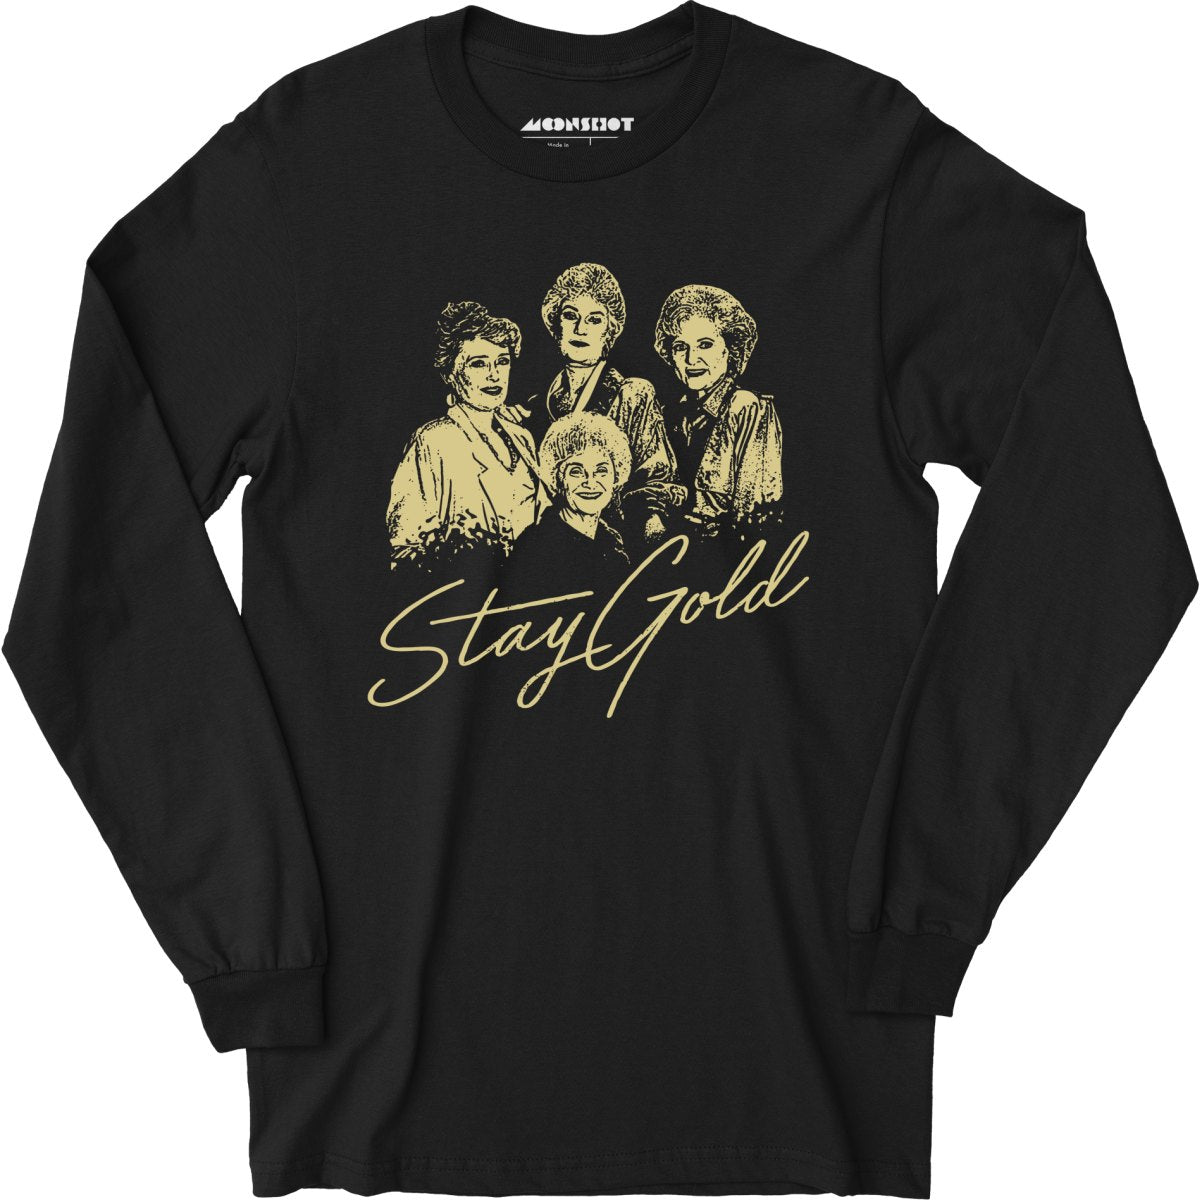 Stay Gold - Golden Girls - Long Sleeve T-Shirt